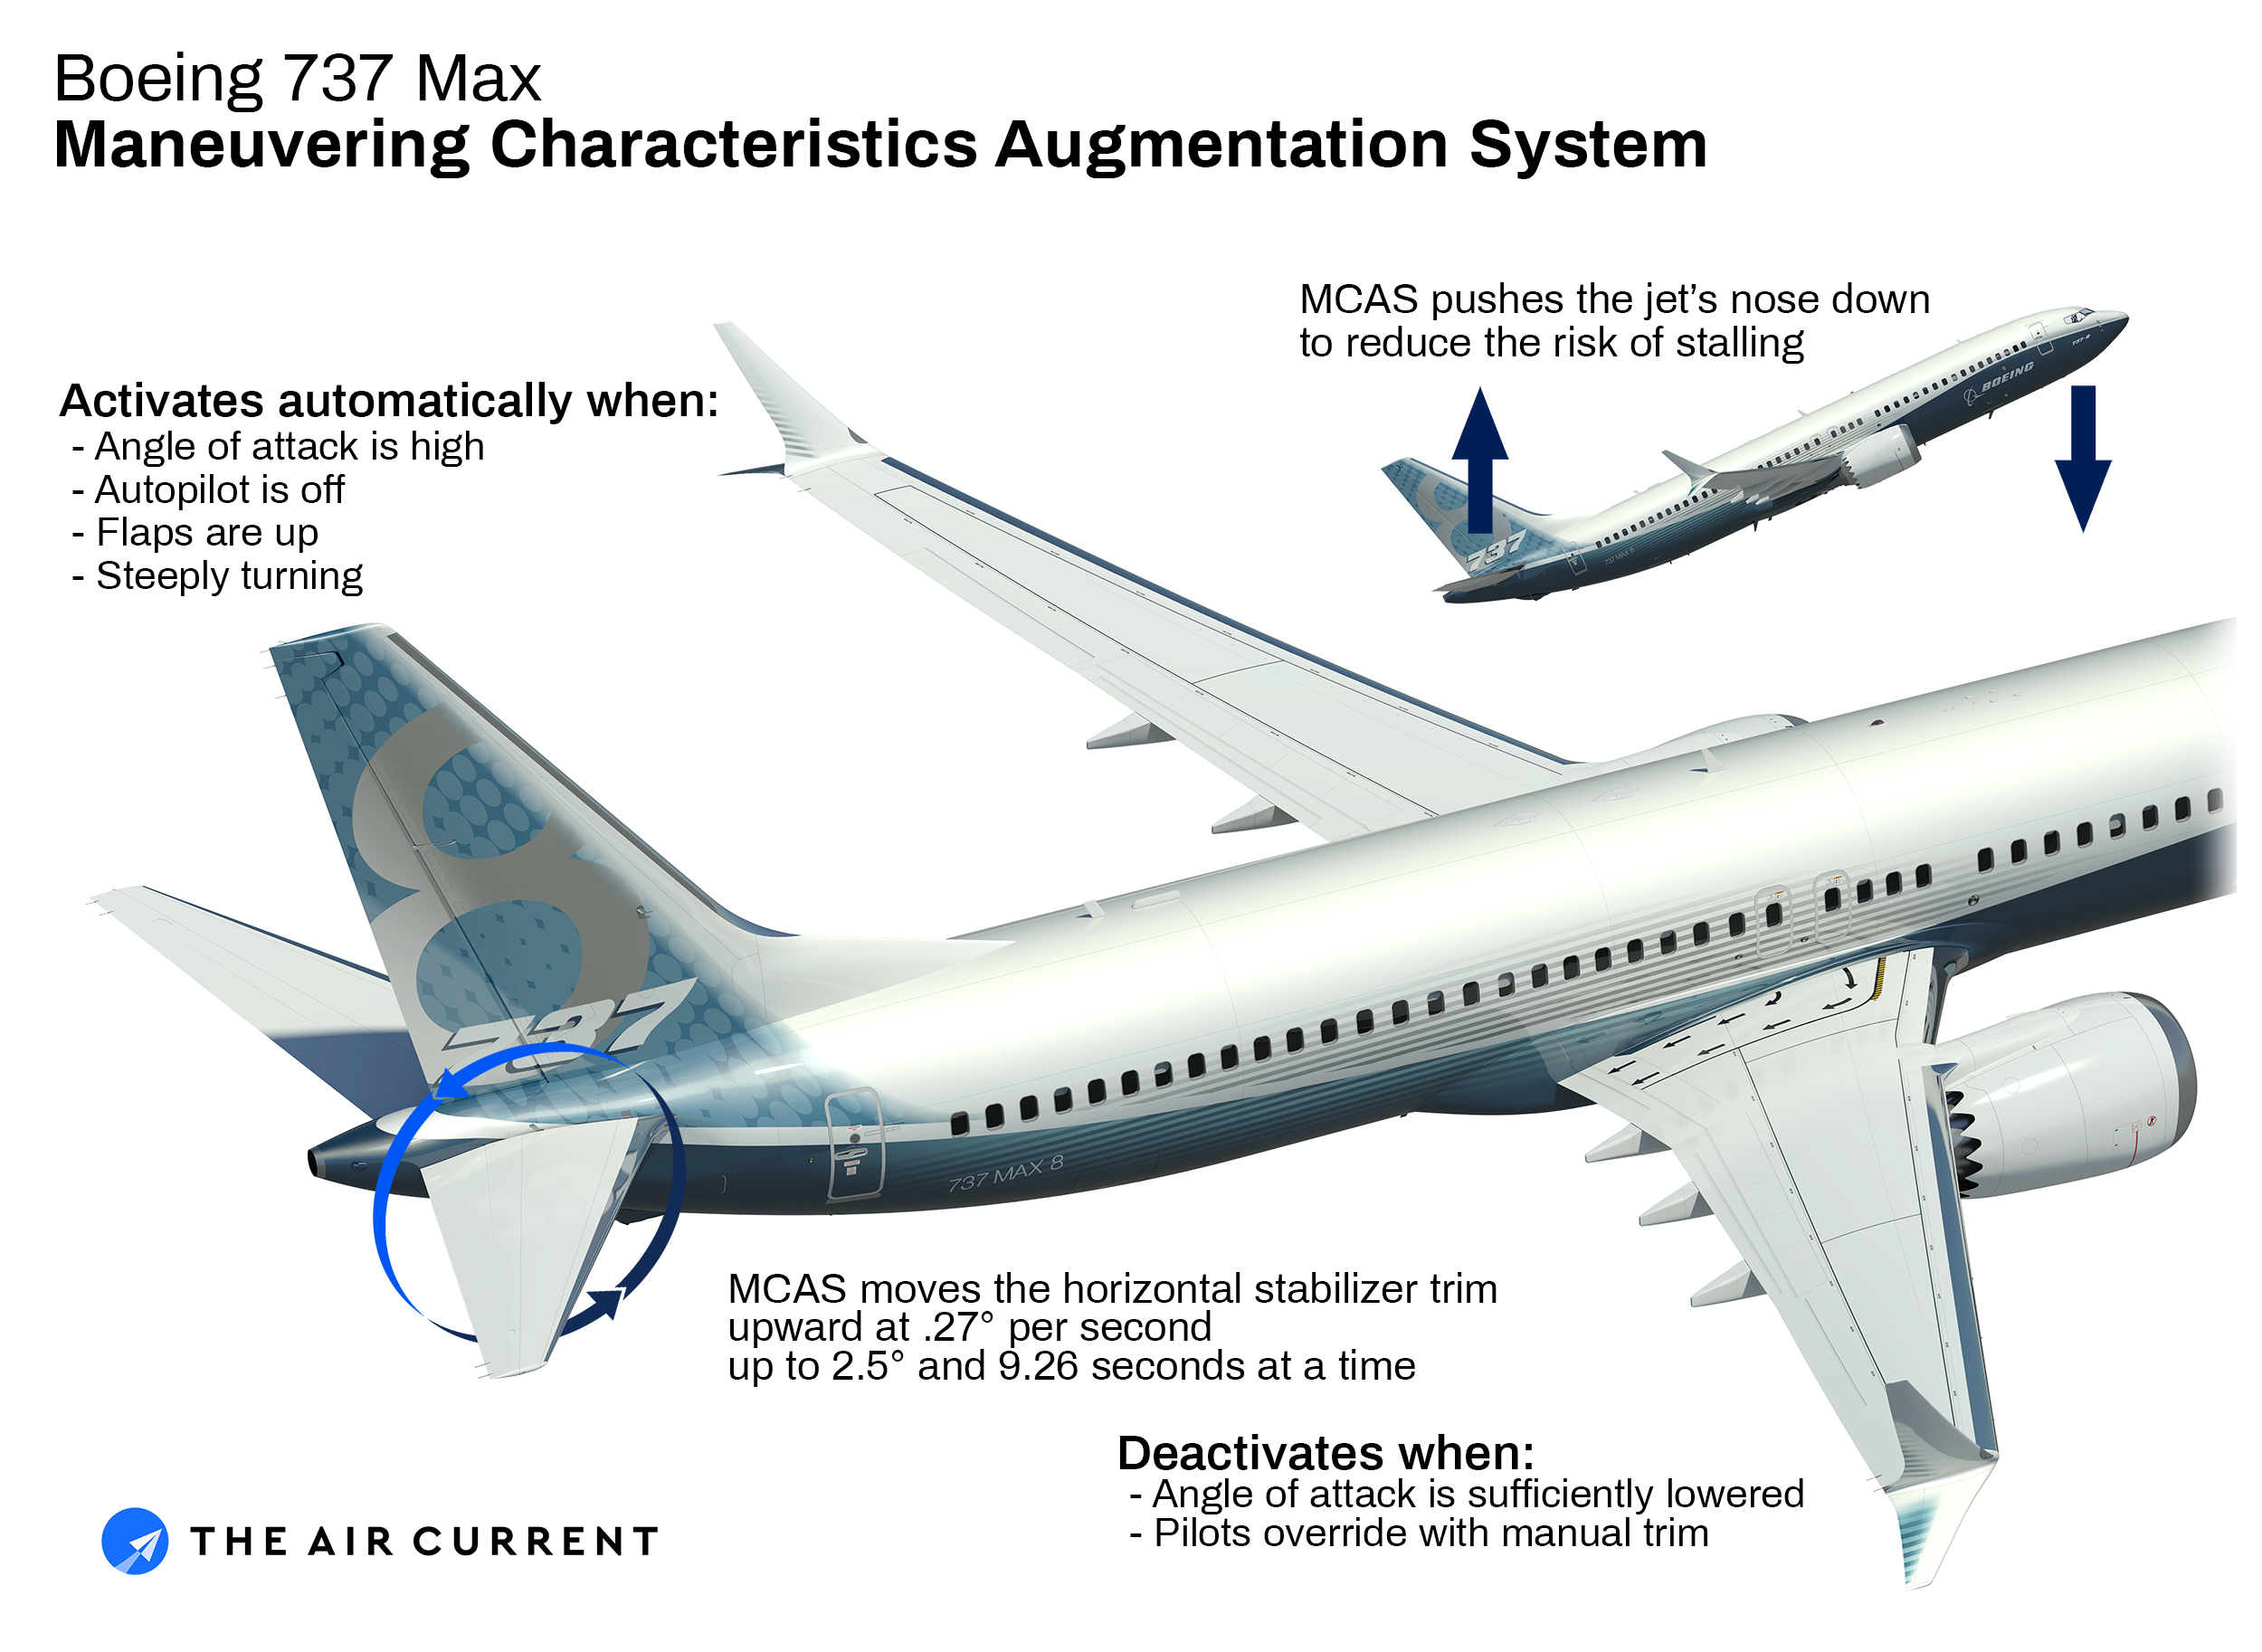 Az MCAS működése: a The Air Current ábrája